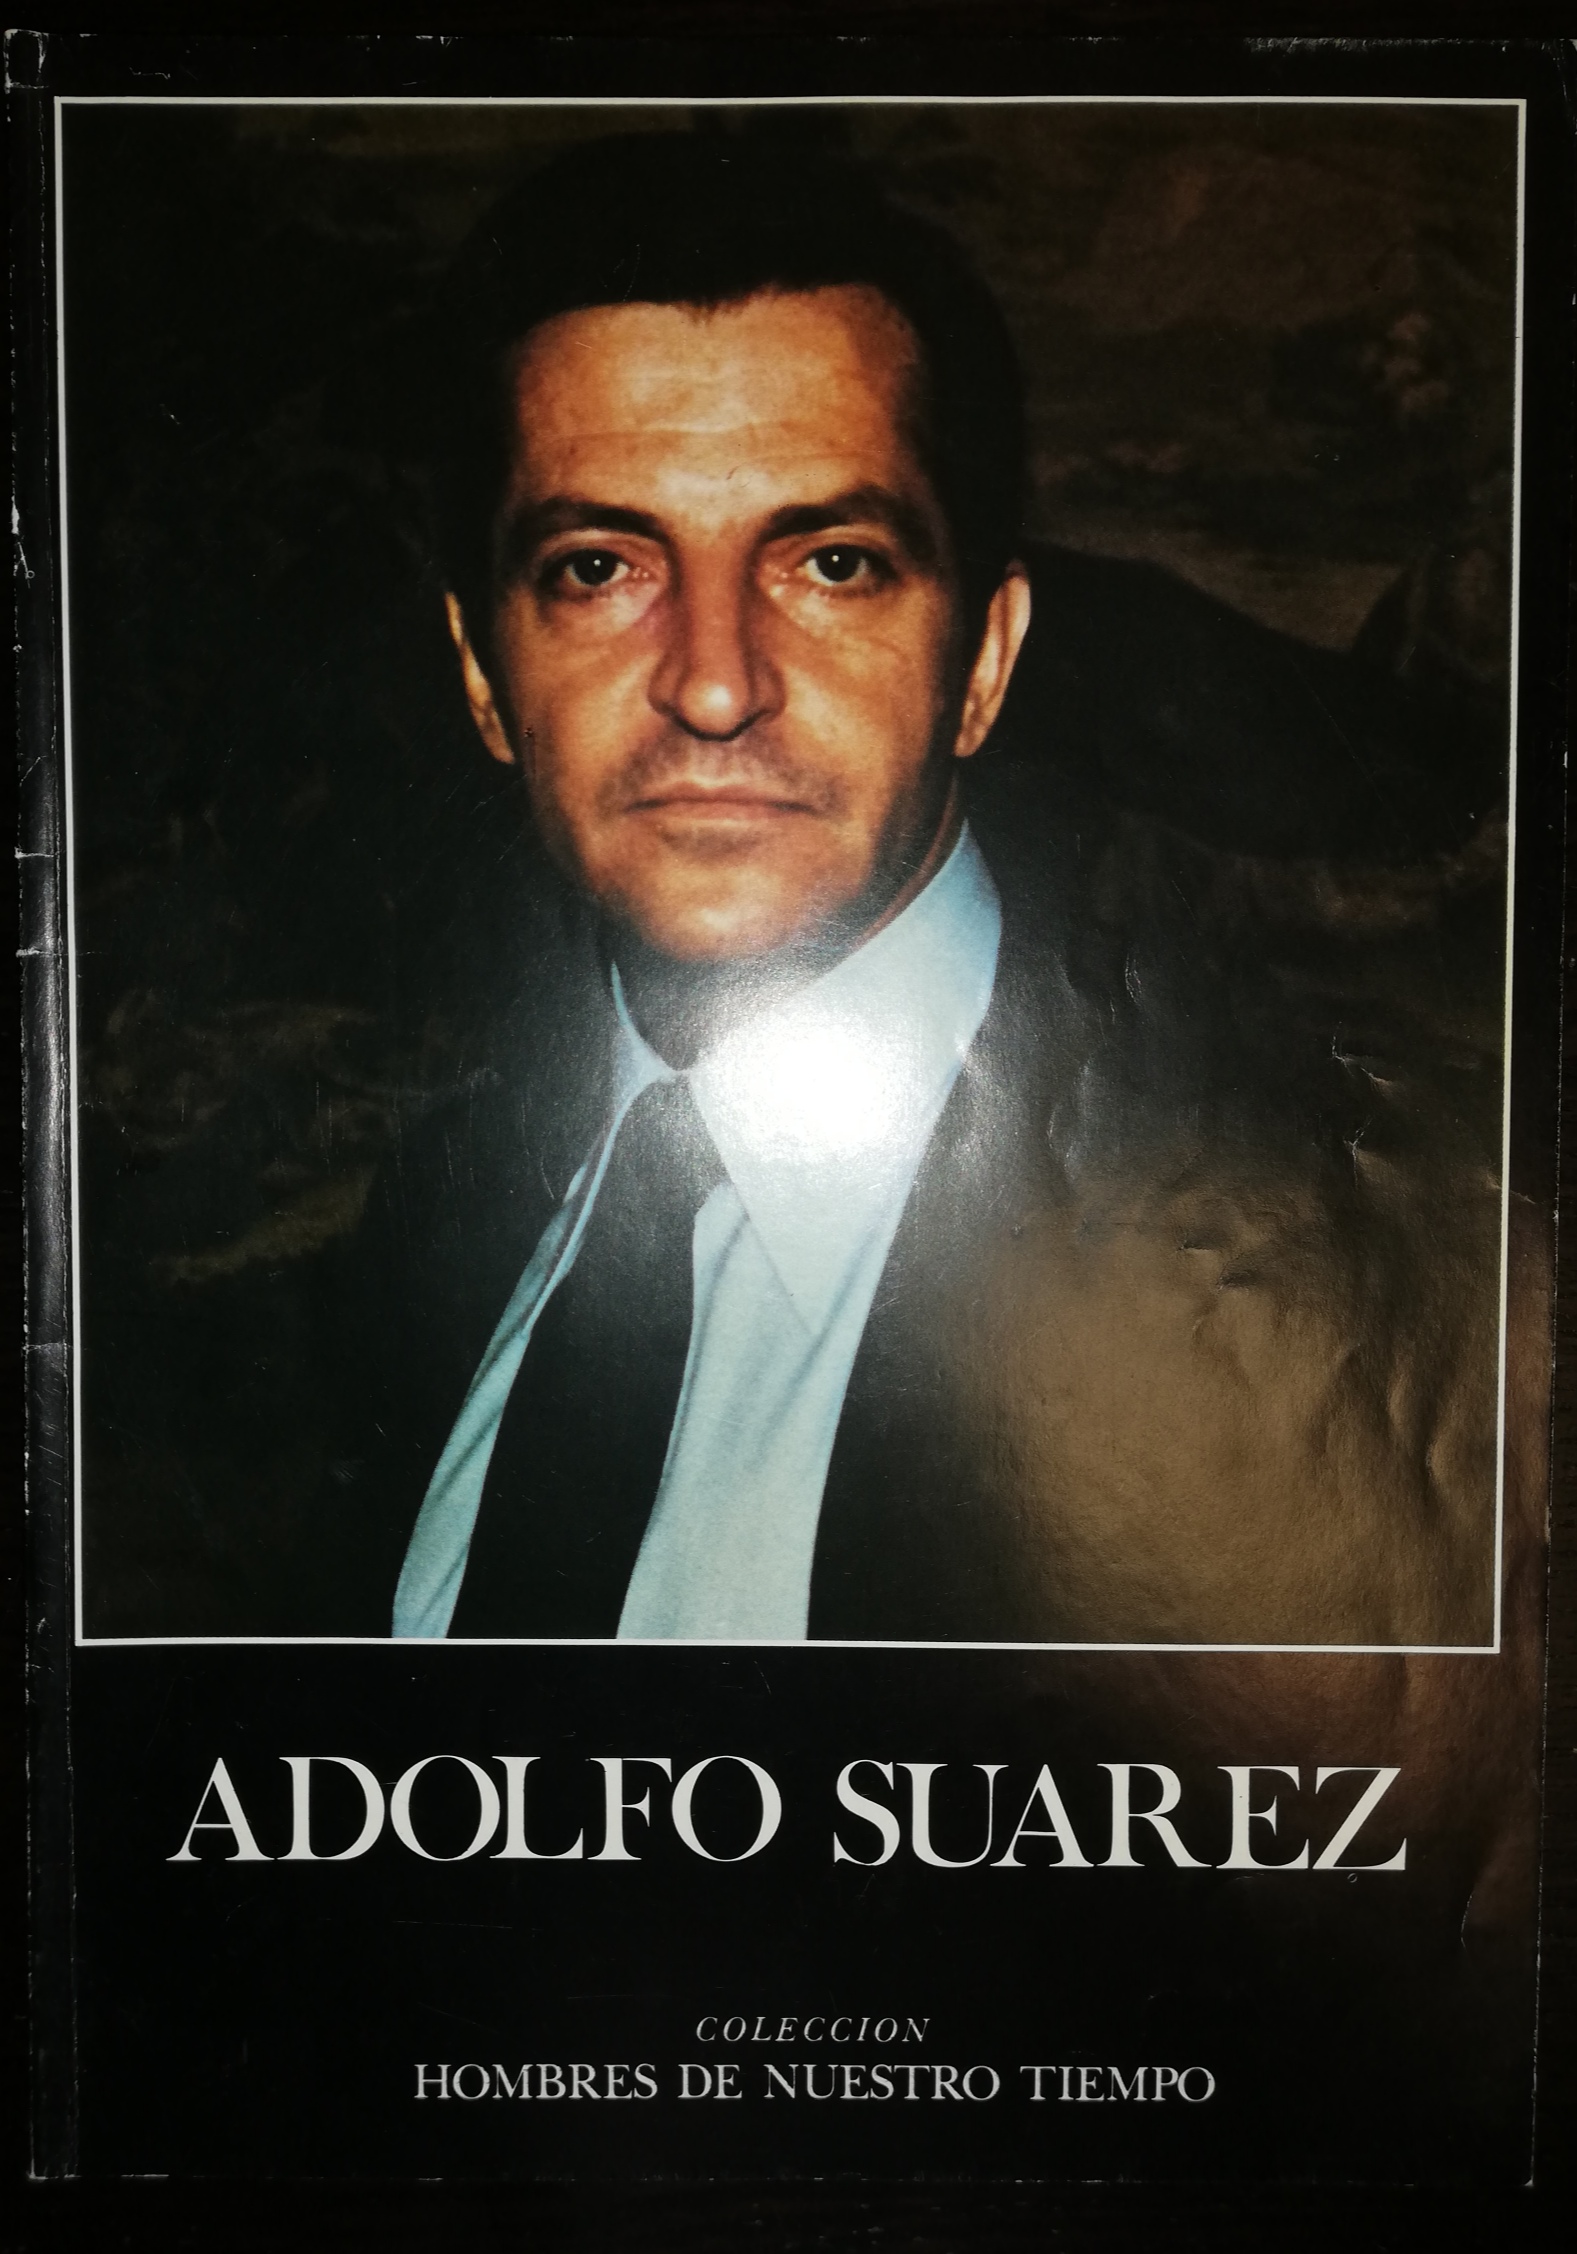 Adolfo Suarez. Colección Hombres de Nuestro Tiempo. 1978